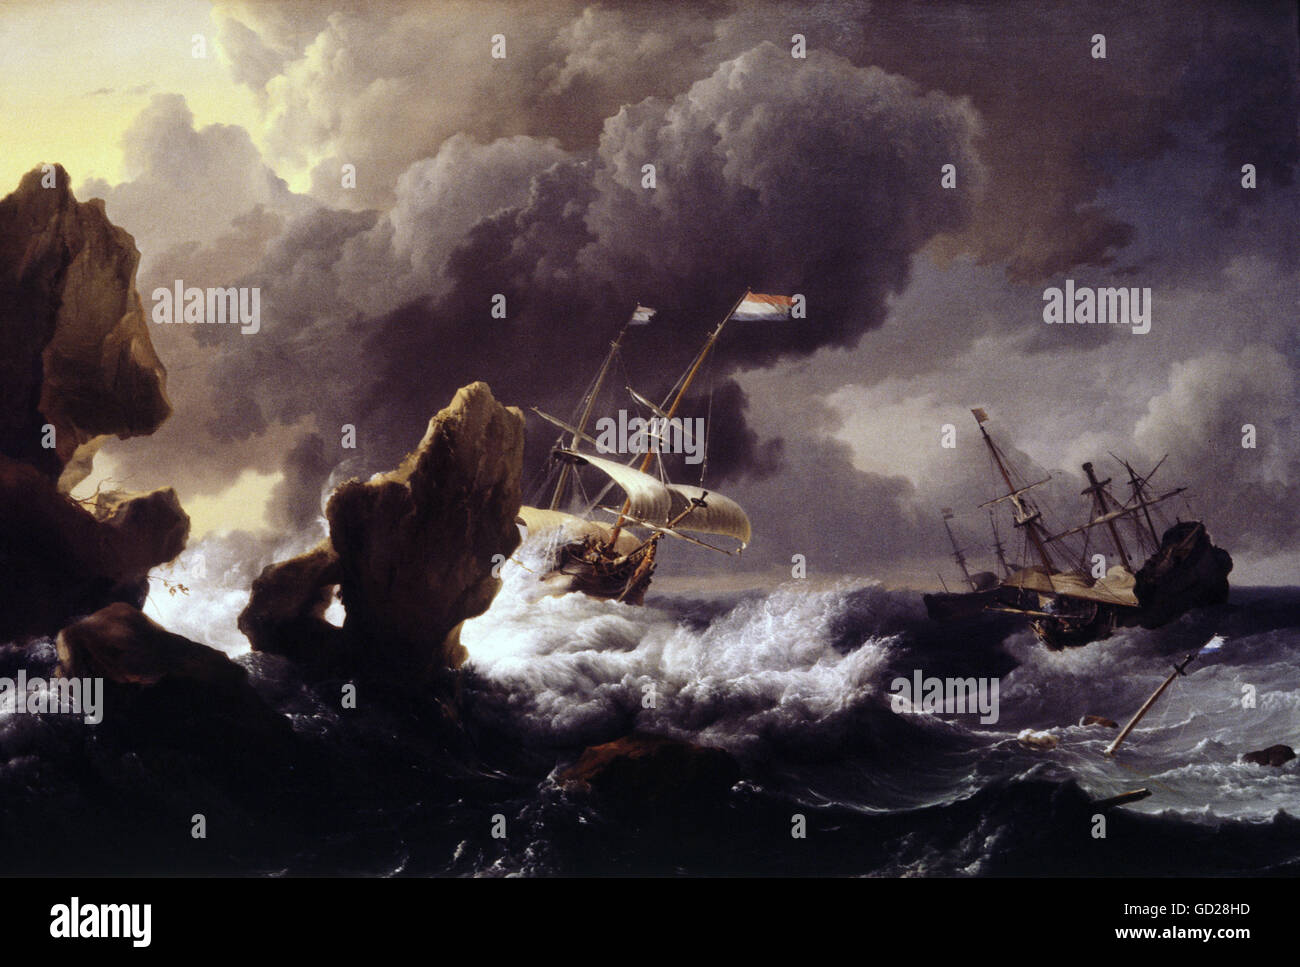 Beaux-arts, Ludolf Bakhuizen, (1630 - 1708), la peinture, les navires dans une tempête avant d'une falaise, huile sur toile, 1667, National Gallery of Art, Washington DC, n'a pas d'auteur de l'artiste pour être effacé Banque D'Images